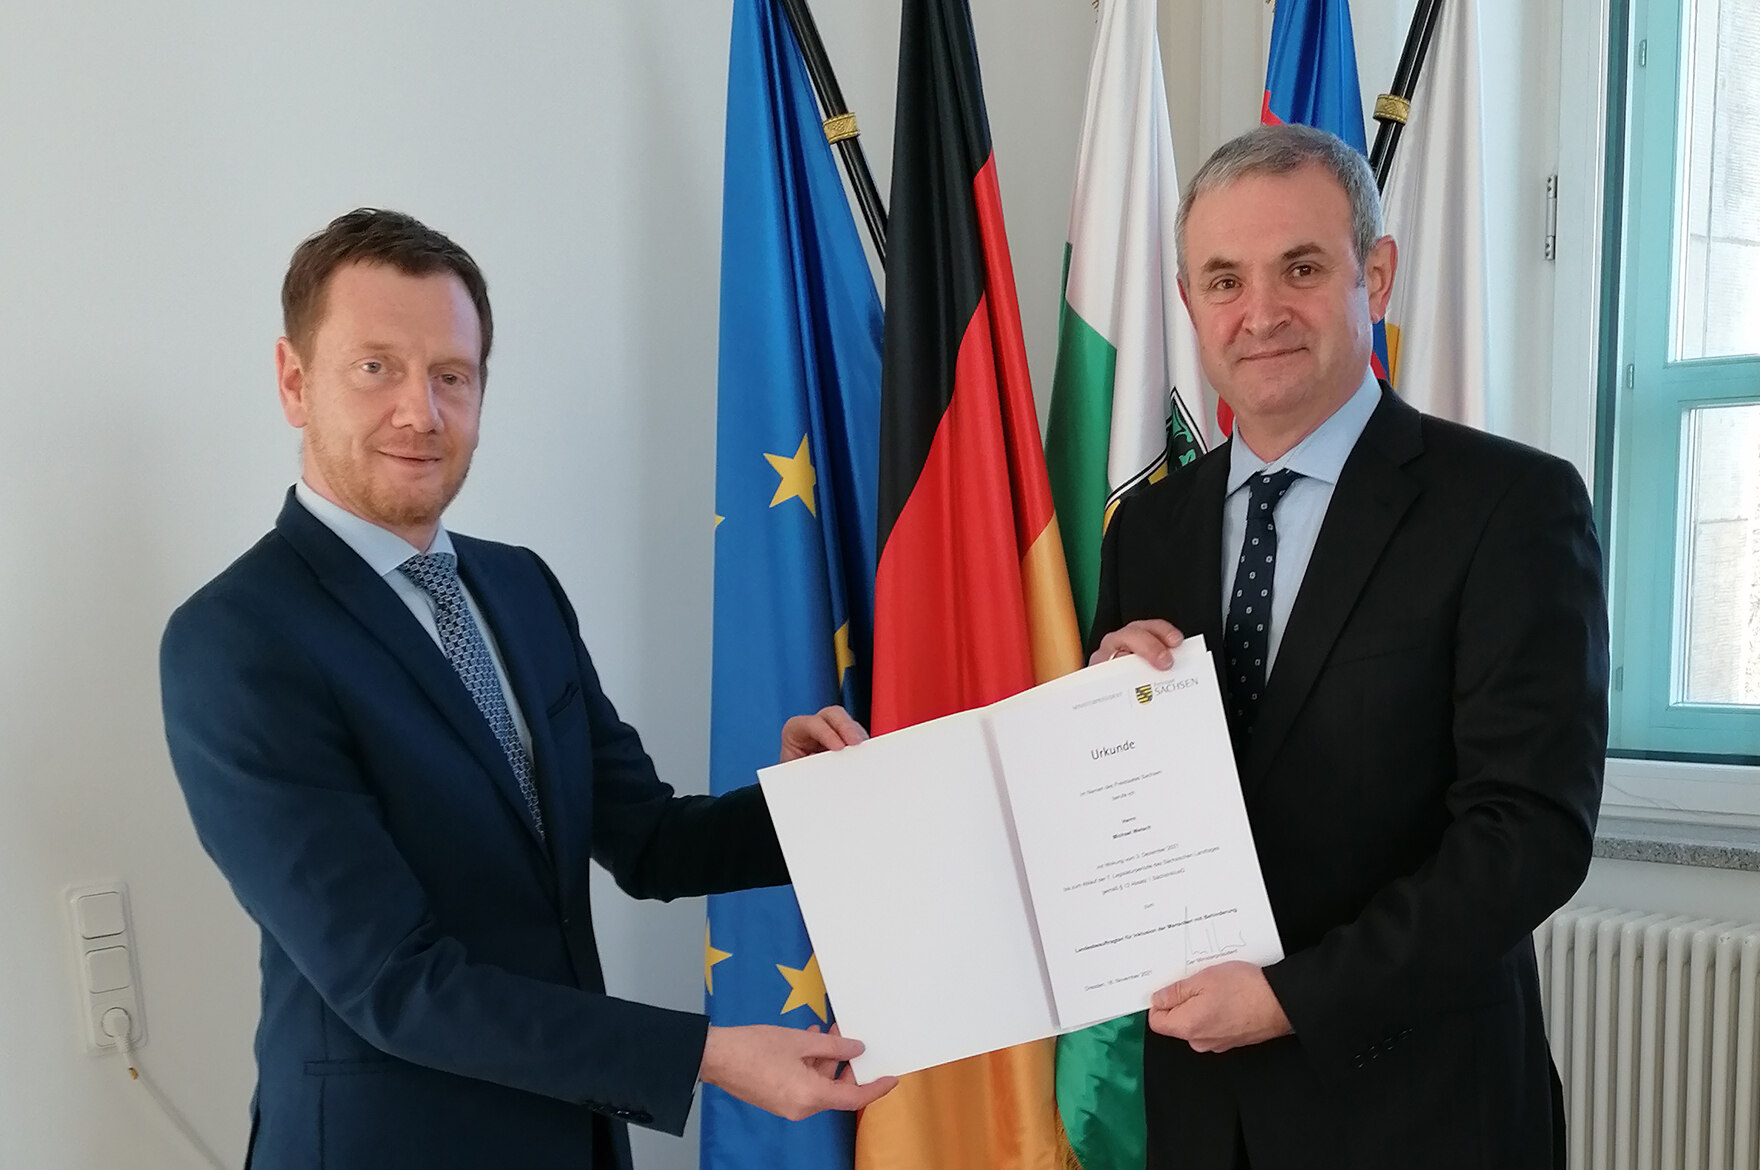 Ministerpräsident Stephan Pöhler und der Landesinklusionsbeauftragte Michael Welsch bei der Ernennung am 3.12.2021